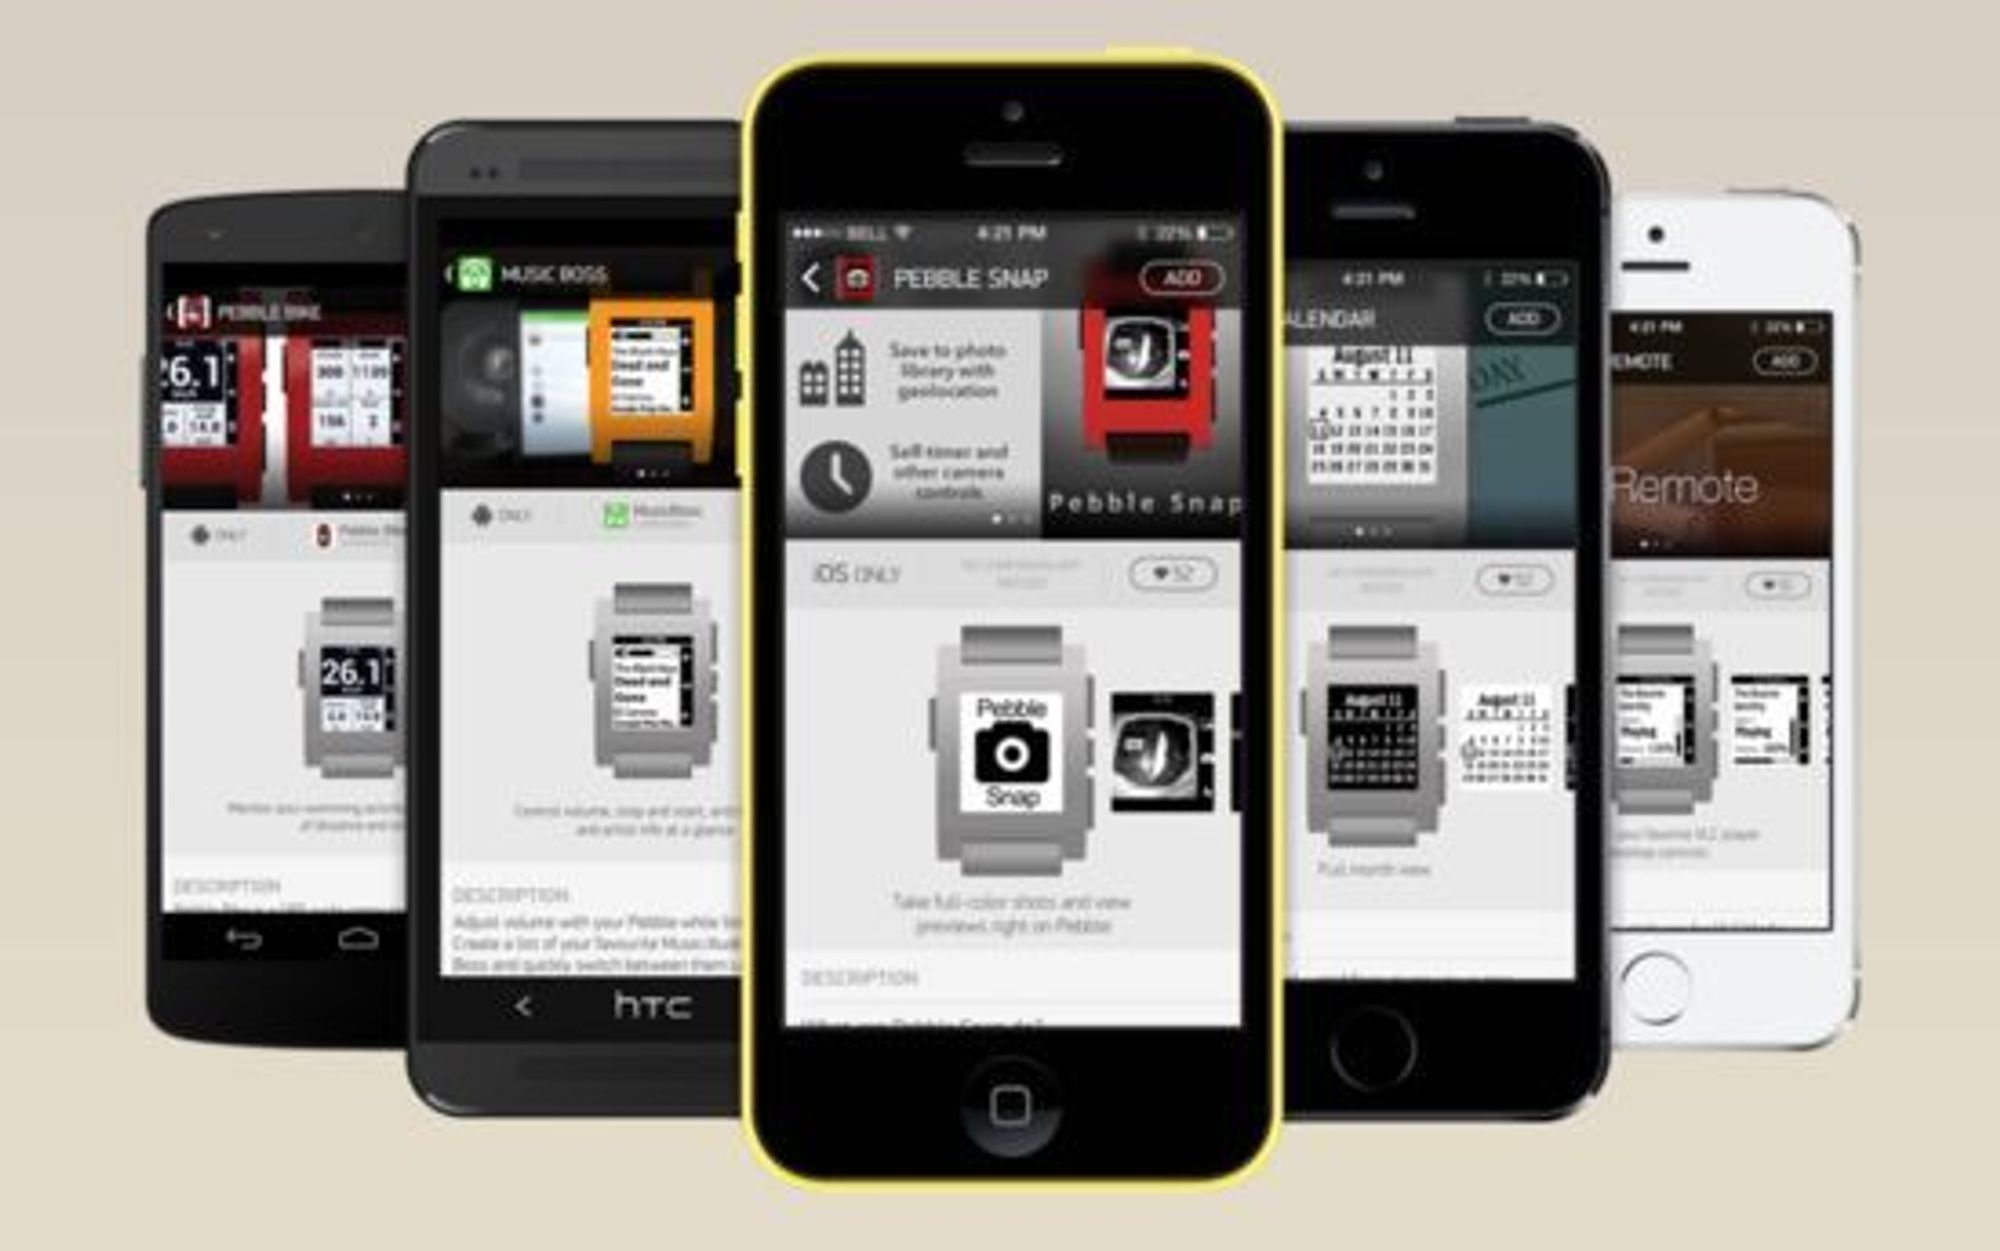 Apper til Pebble hentes gjennom mobilen, og overføres til uret over Bluetooth.